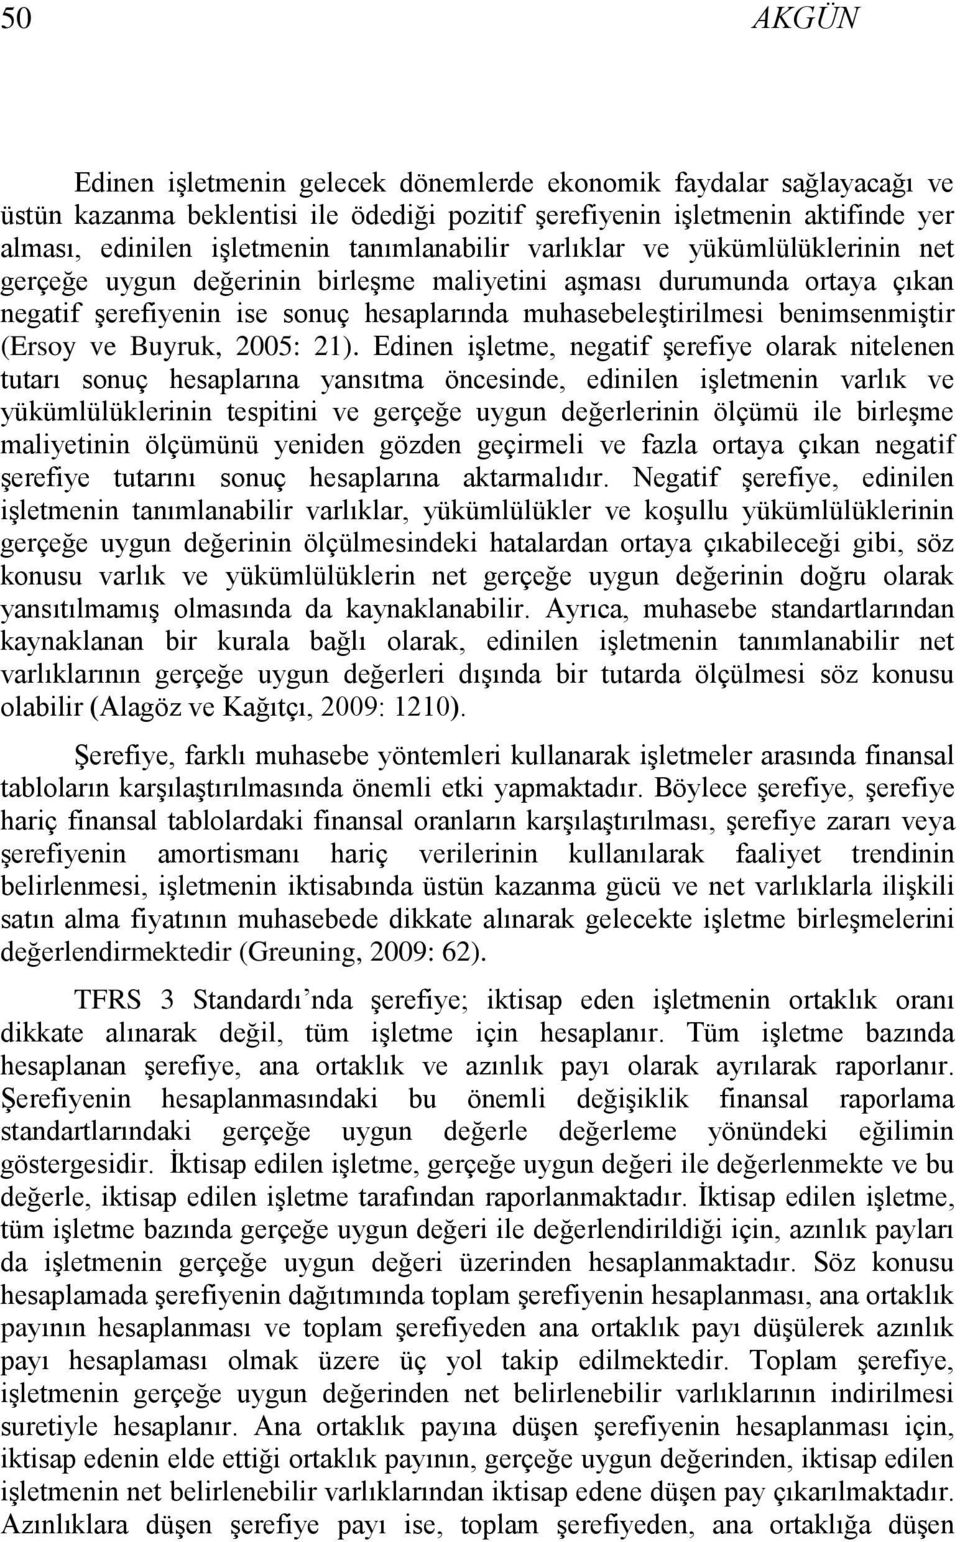 benimsenmiģtir (Ersoy ve Buyruk, 2005: 21).